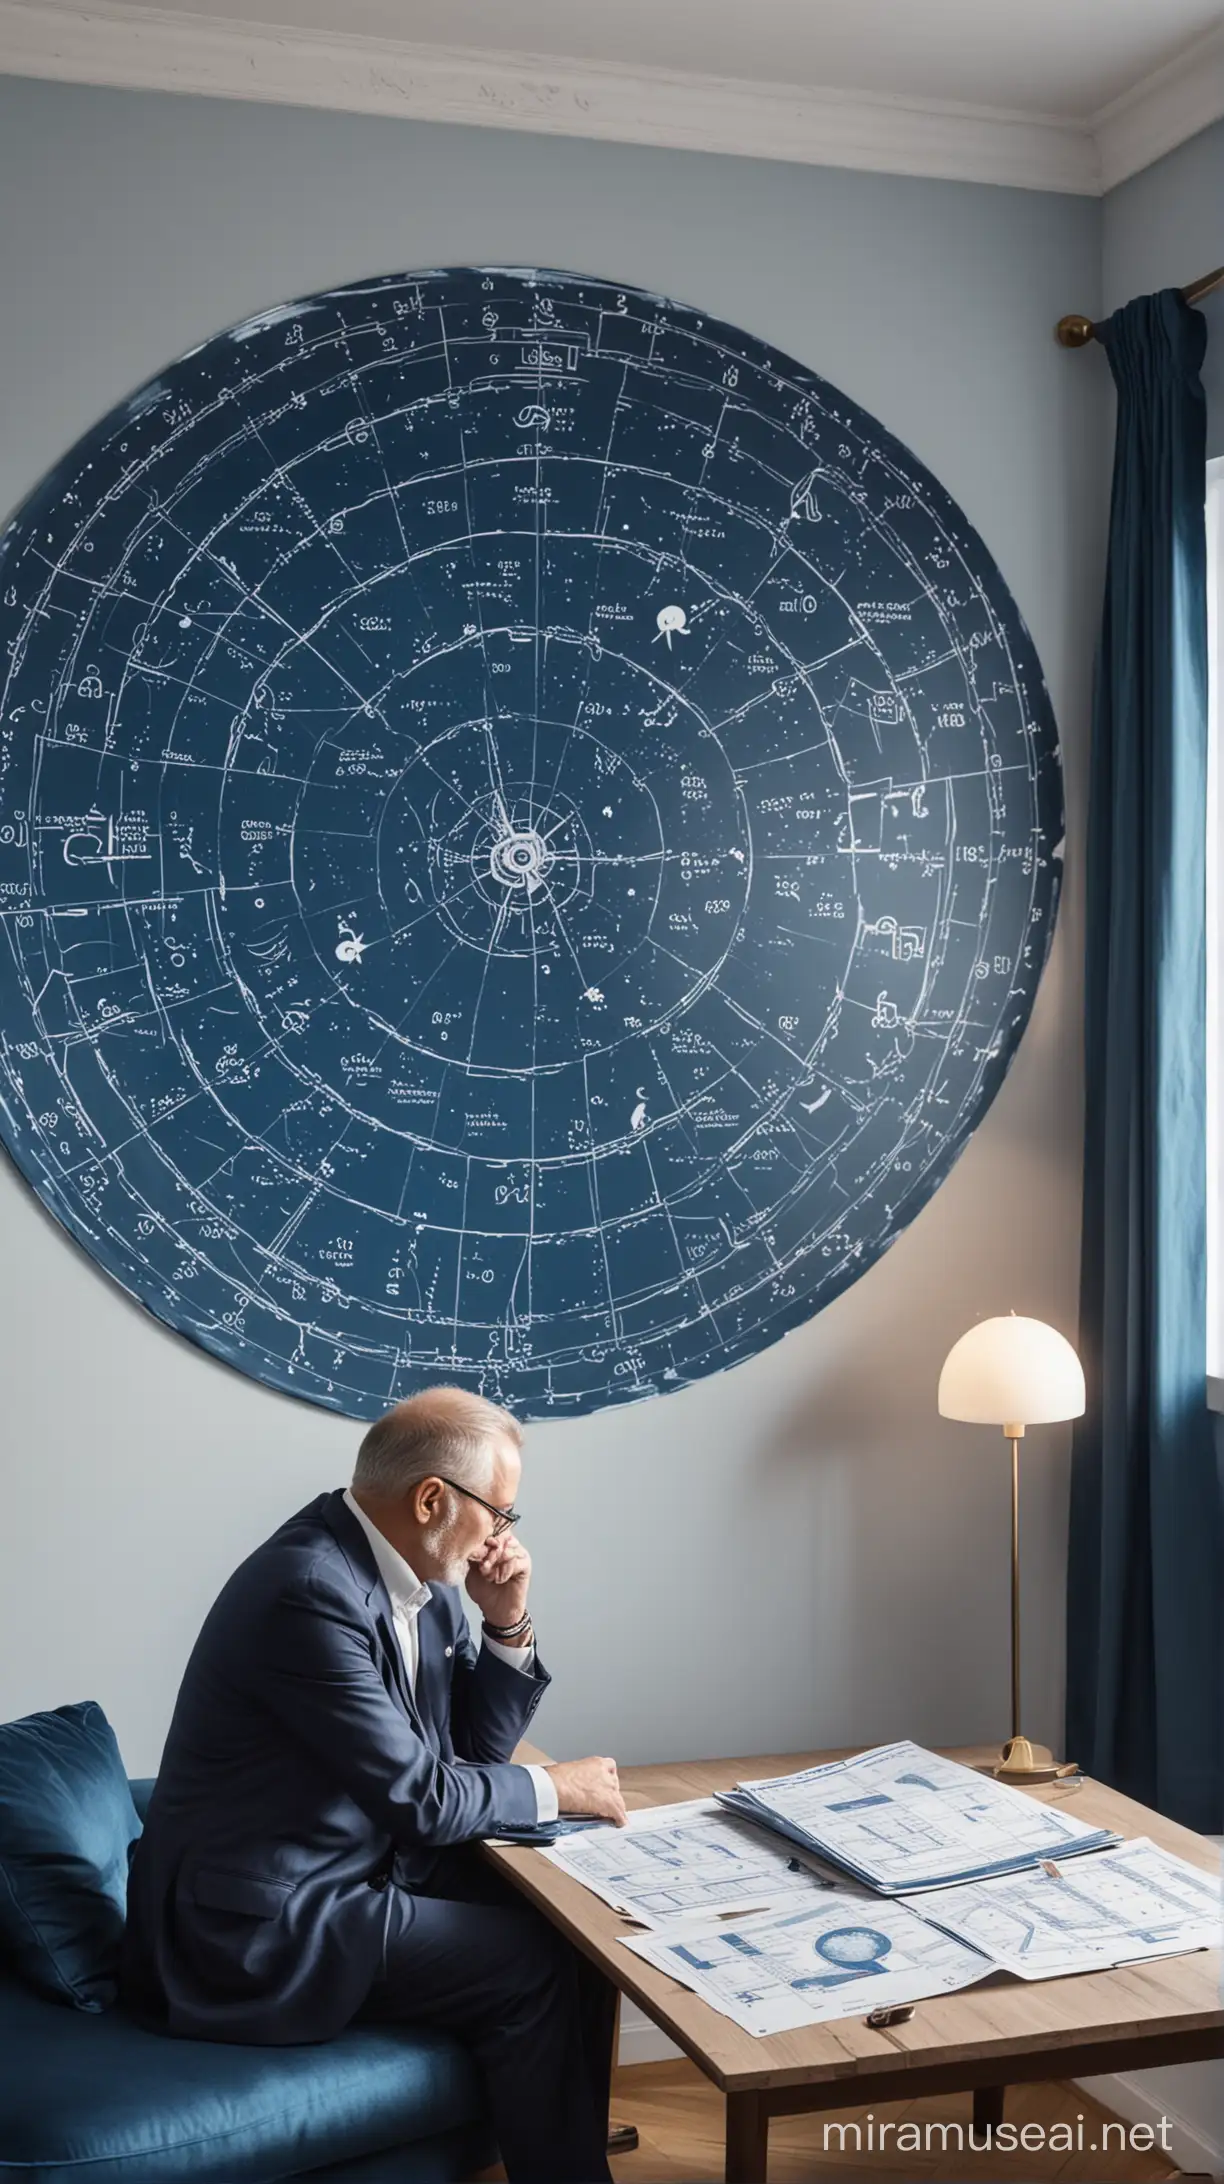 Hombre de 60 años mirando una carta astral en una habitación moderna y elegante, en tonos azul petróleo y blanco